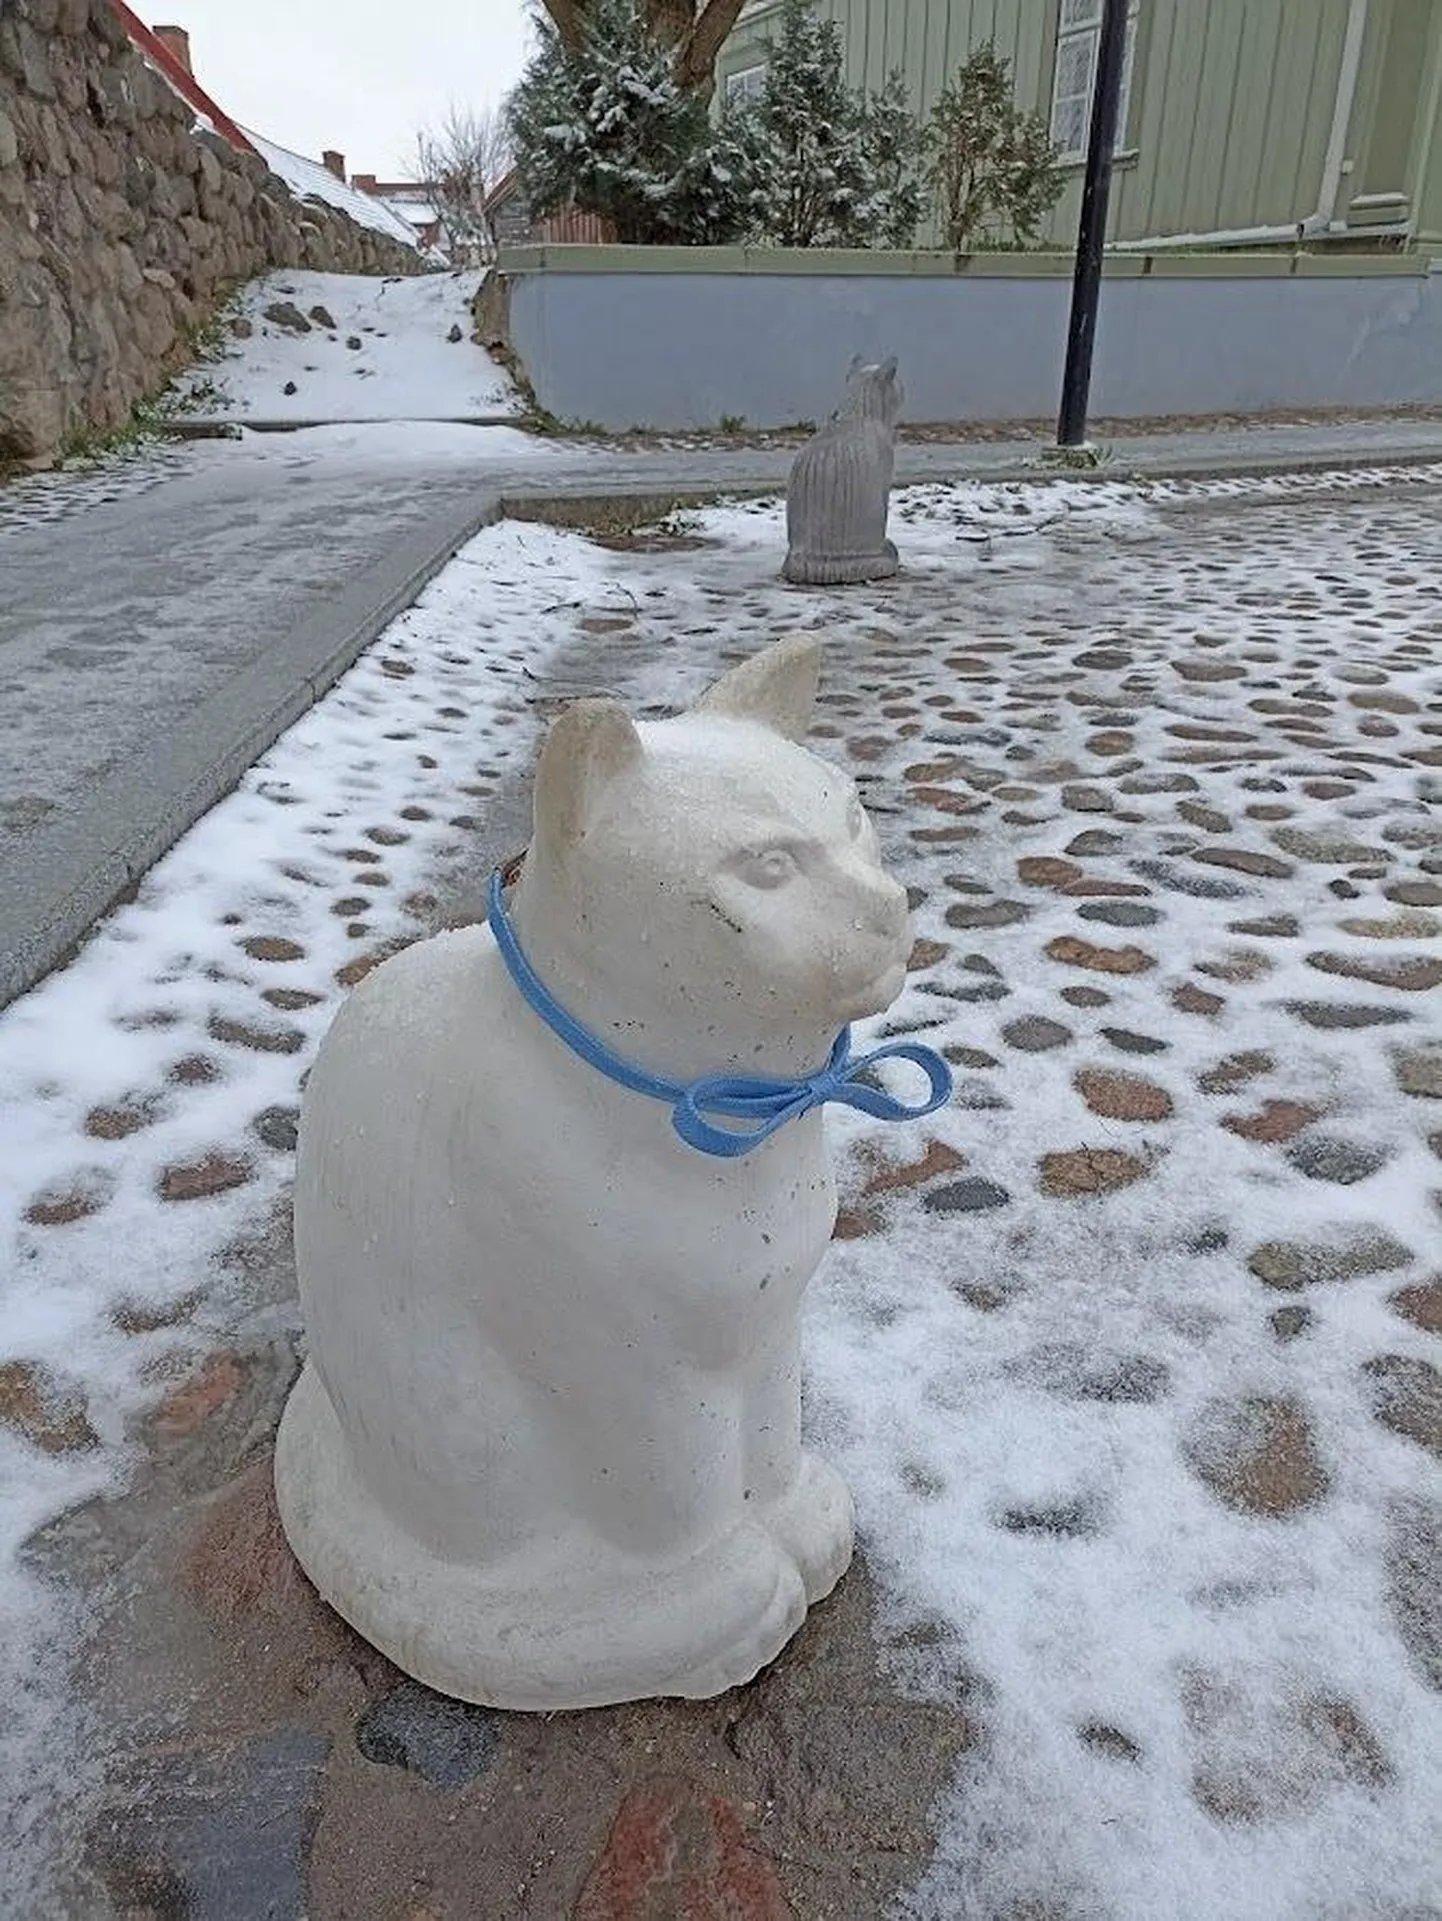 Esmaspäevases lumes kippus Albert ümbrusega ühte sulama, aga lips, mille sepp Tõnis Luik oli talle kaela seadnud, paistis kaugele.